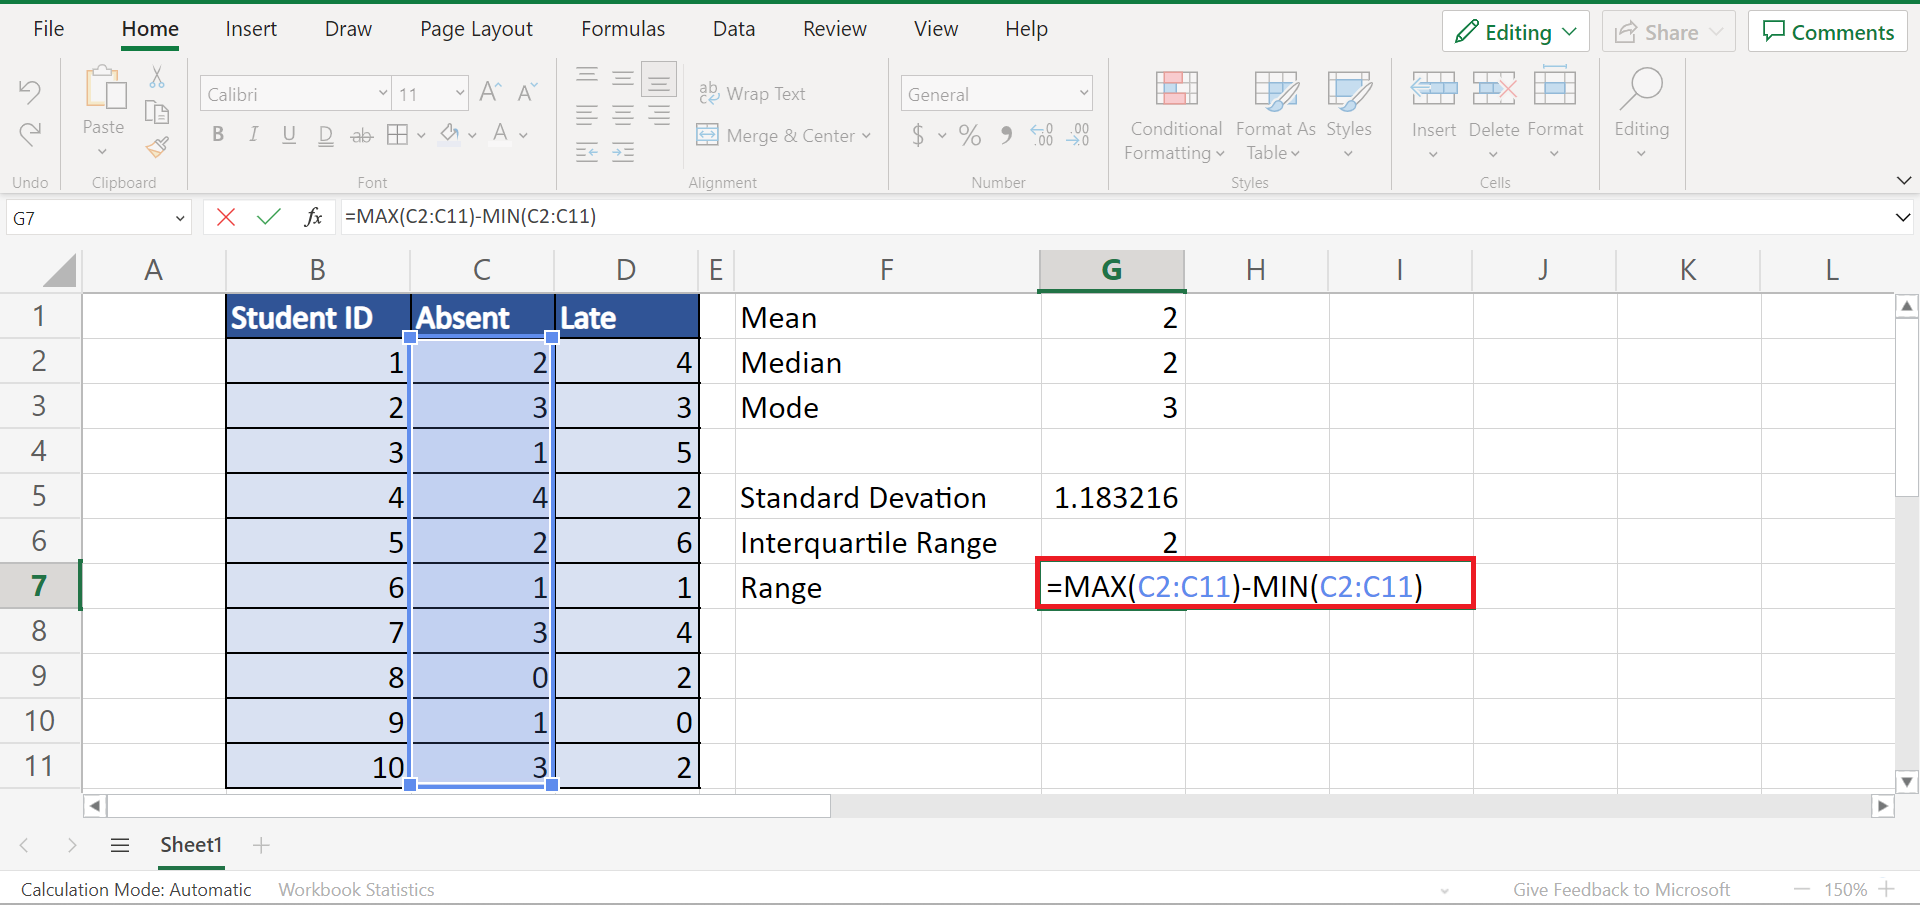 Univariate Analysis in Excel